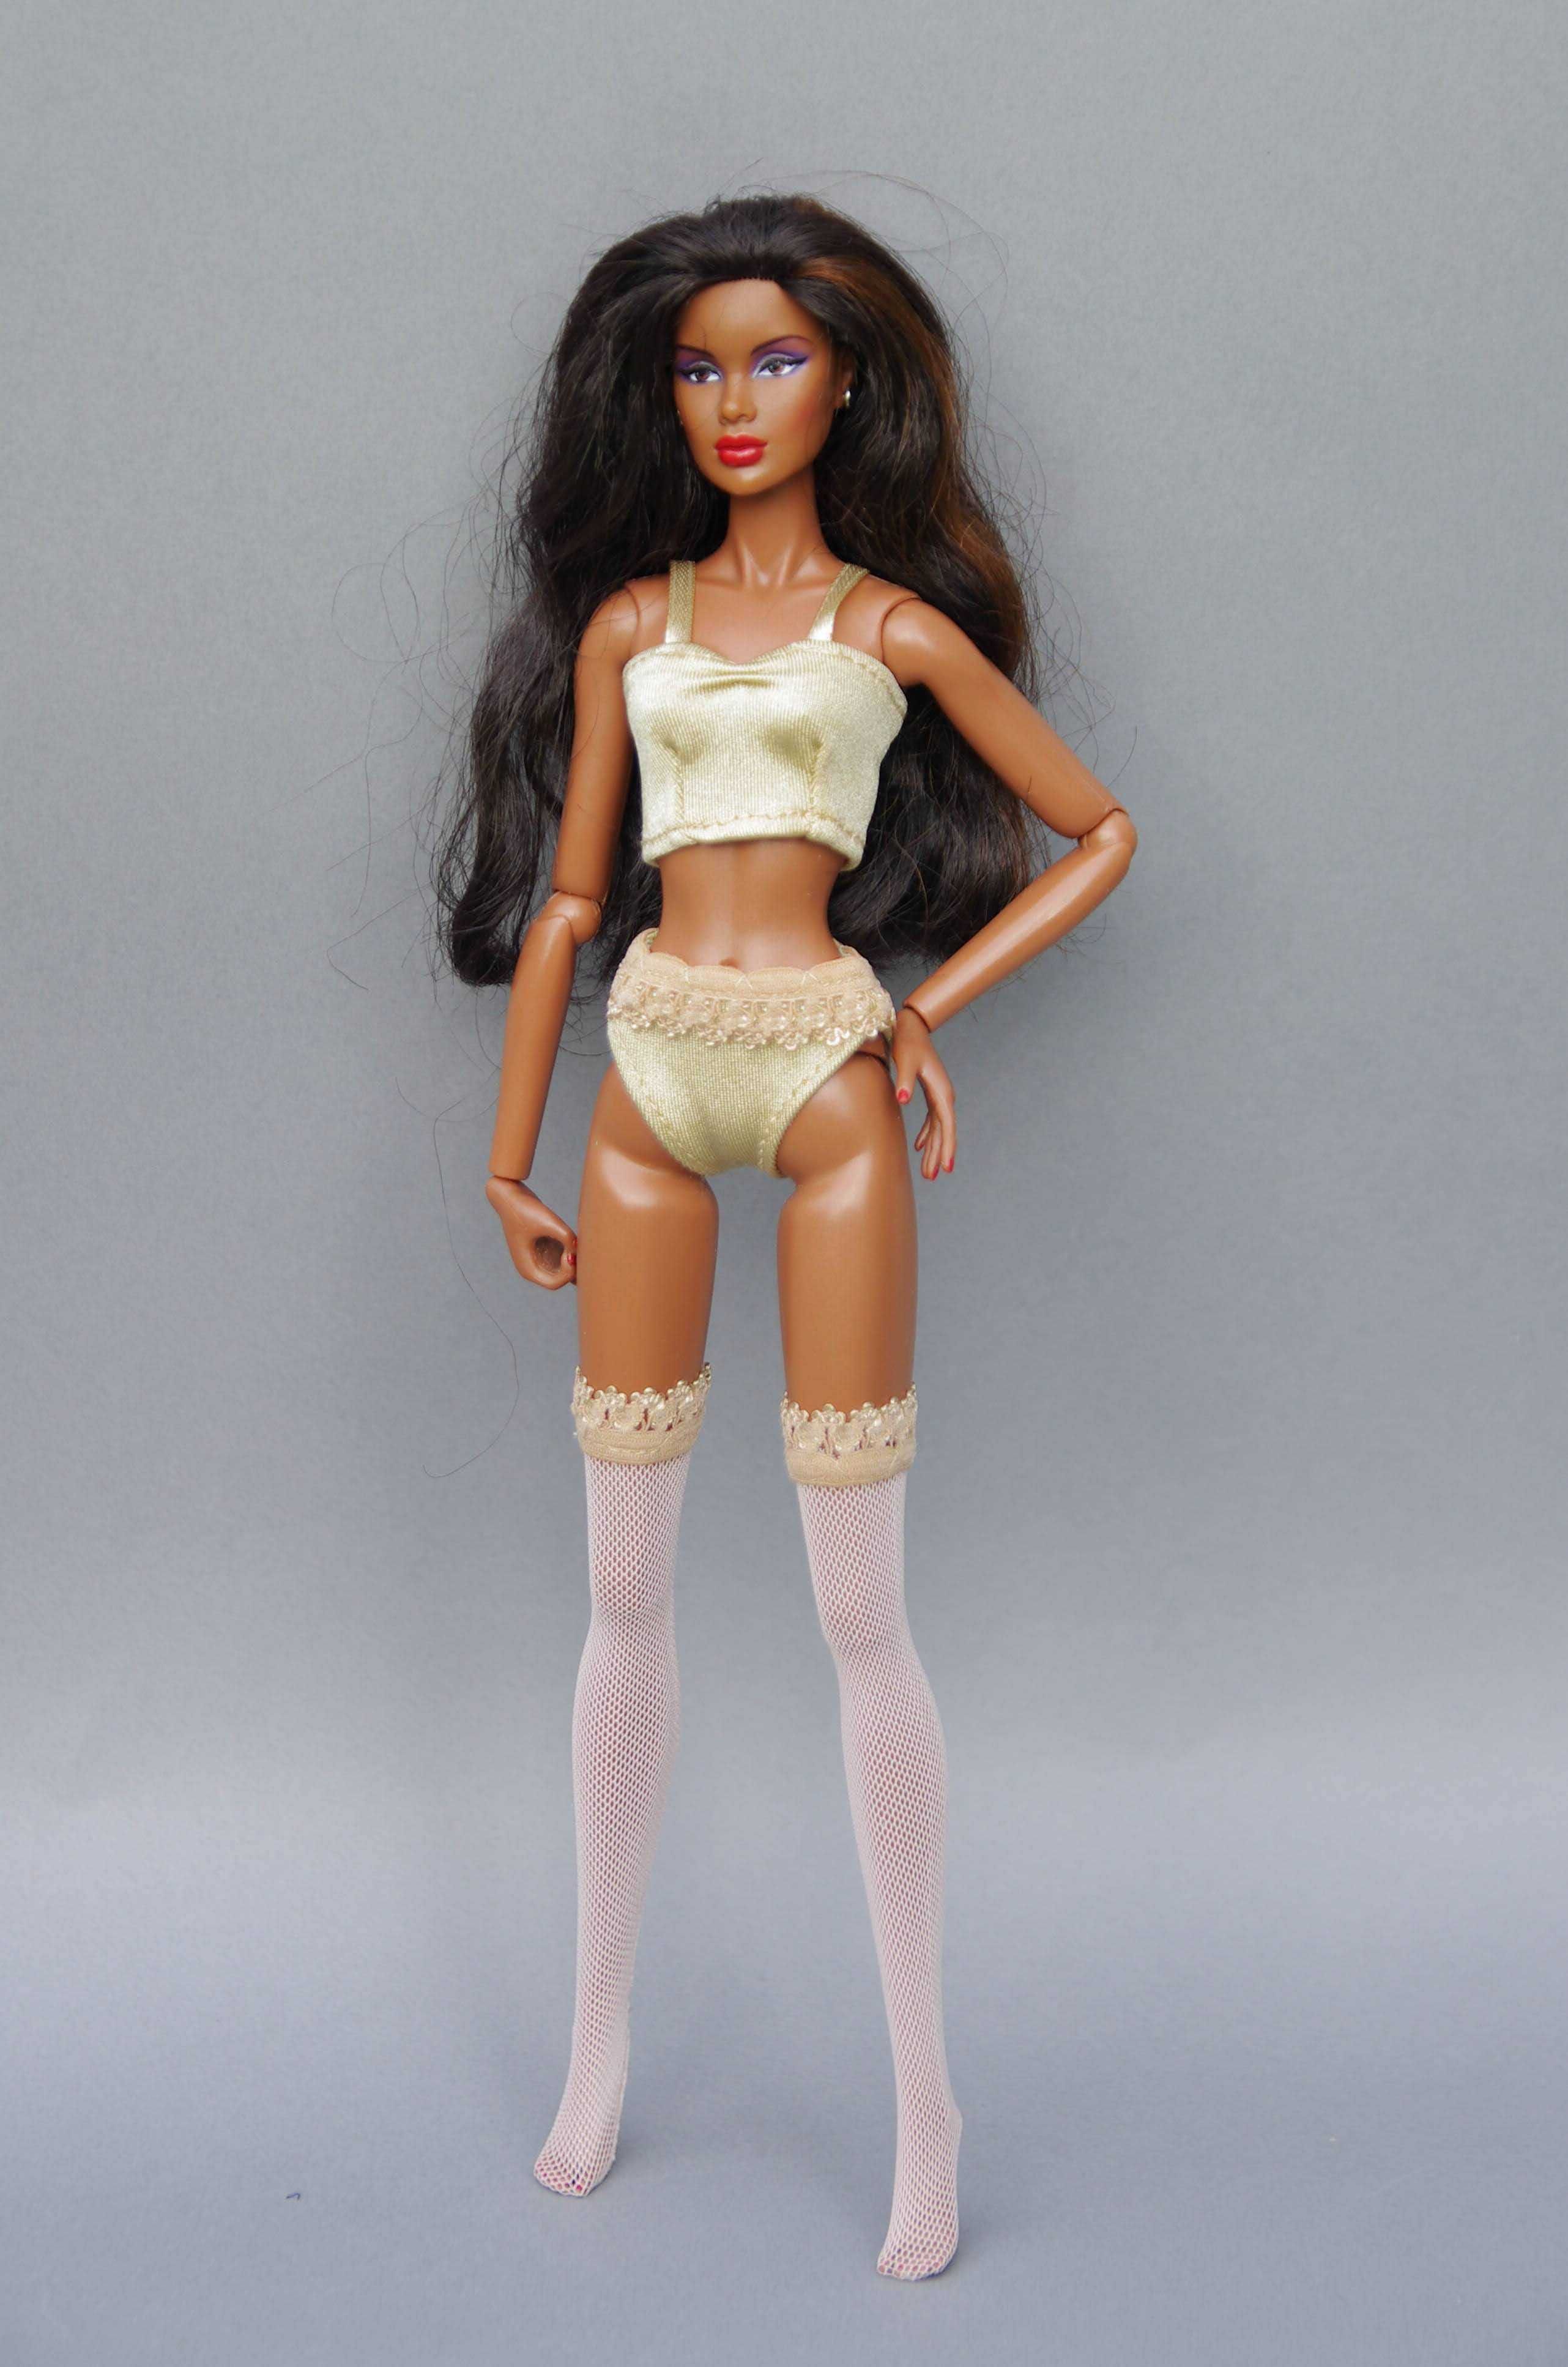 Zestaw ubranek dla Barbie - beżowa bielizna - majtki, pończochy, top